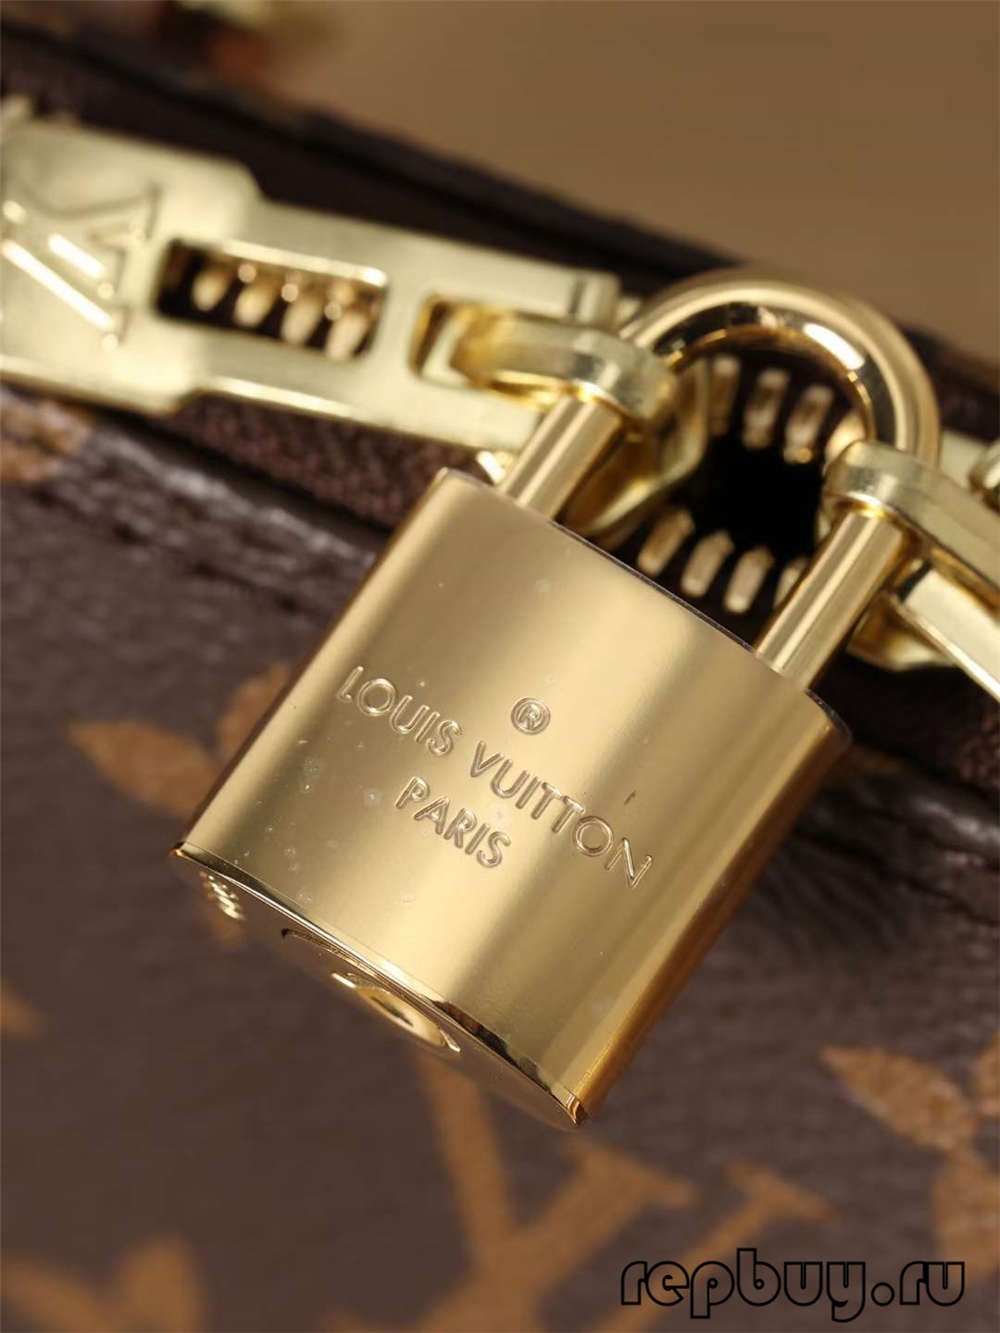 Louis Vuitton M53152 Alma BB réplica de bolsos de alta calidad (2022 más reciente) - Tienda en línea de bolsos falsos de Louis Vuitton de la mejor calidad, réplica de bolso de diseñador ru